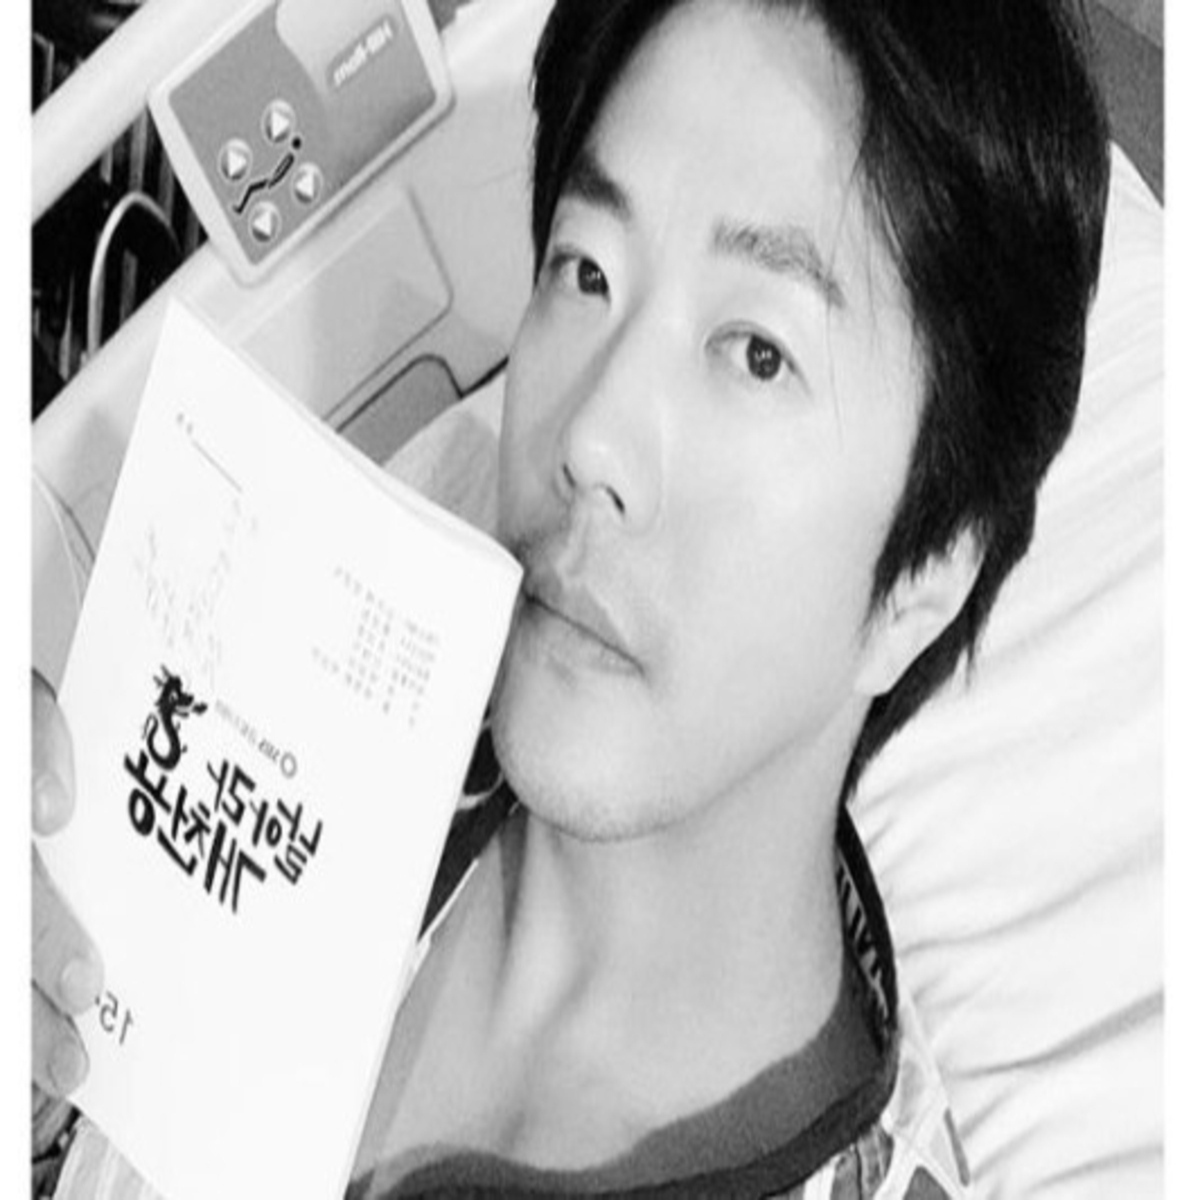 ソン テヨン 手術後の夫クォン サンウの近況写真を公開 愛情が話題に リハビリも頑張りましょう Kstyle